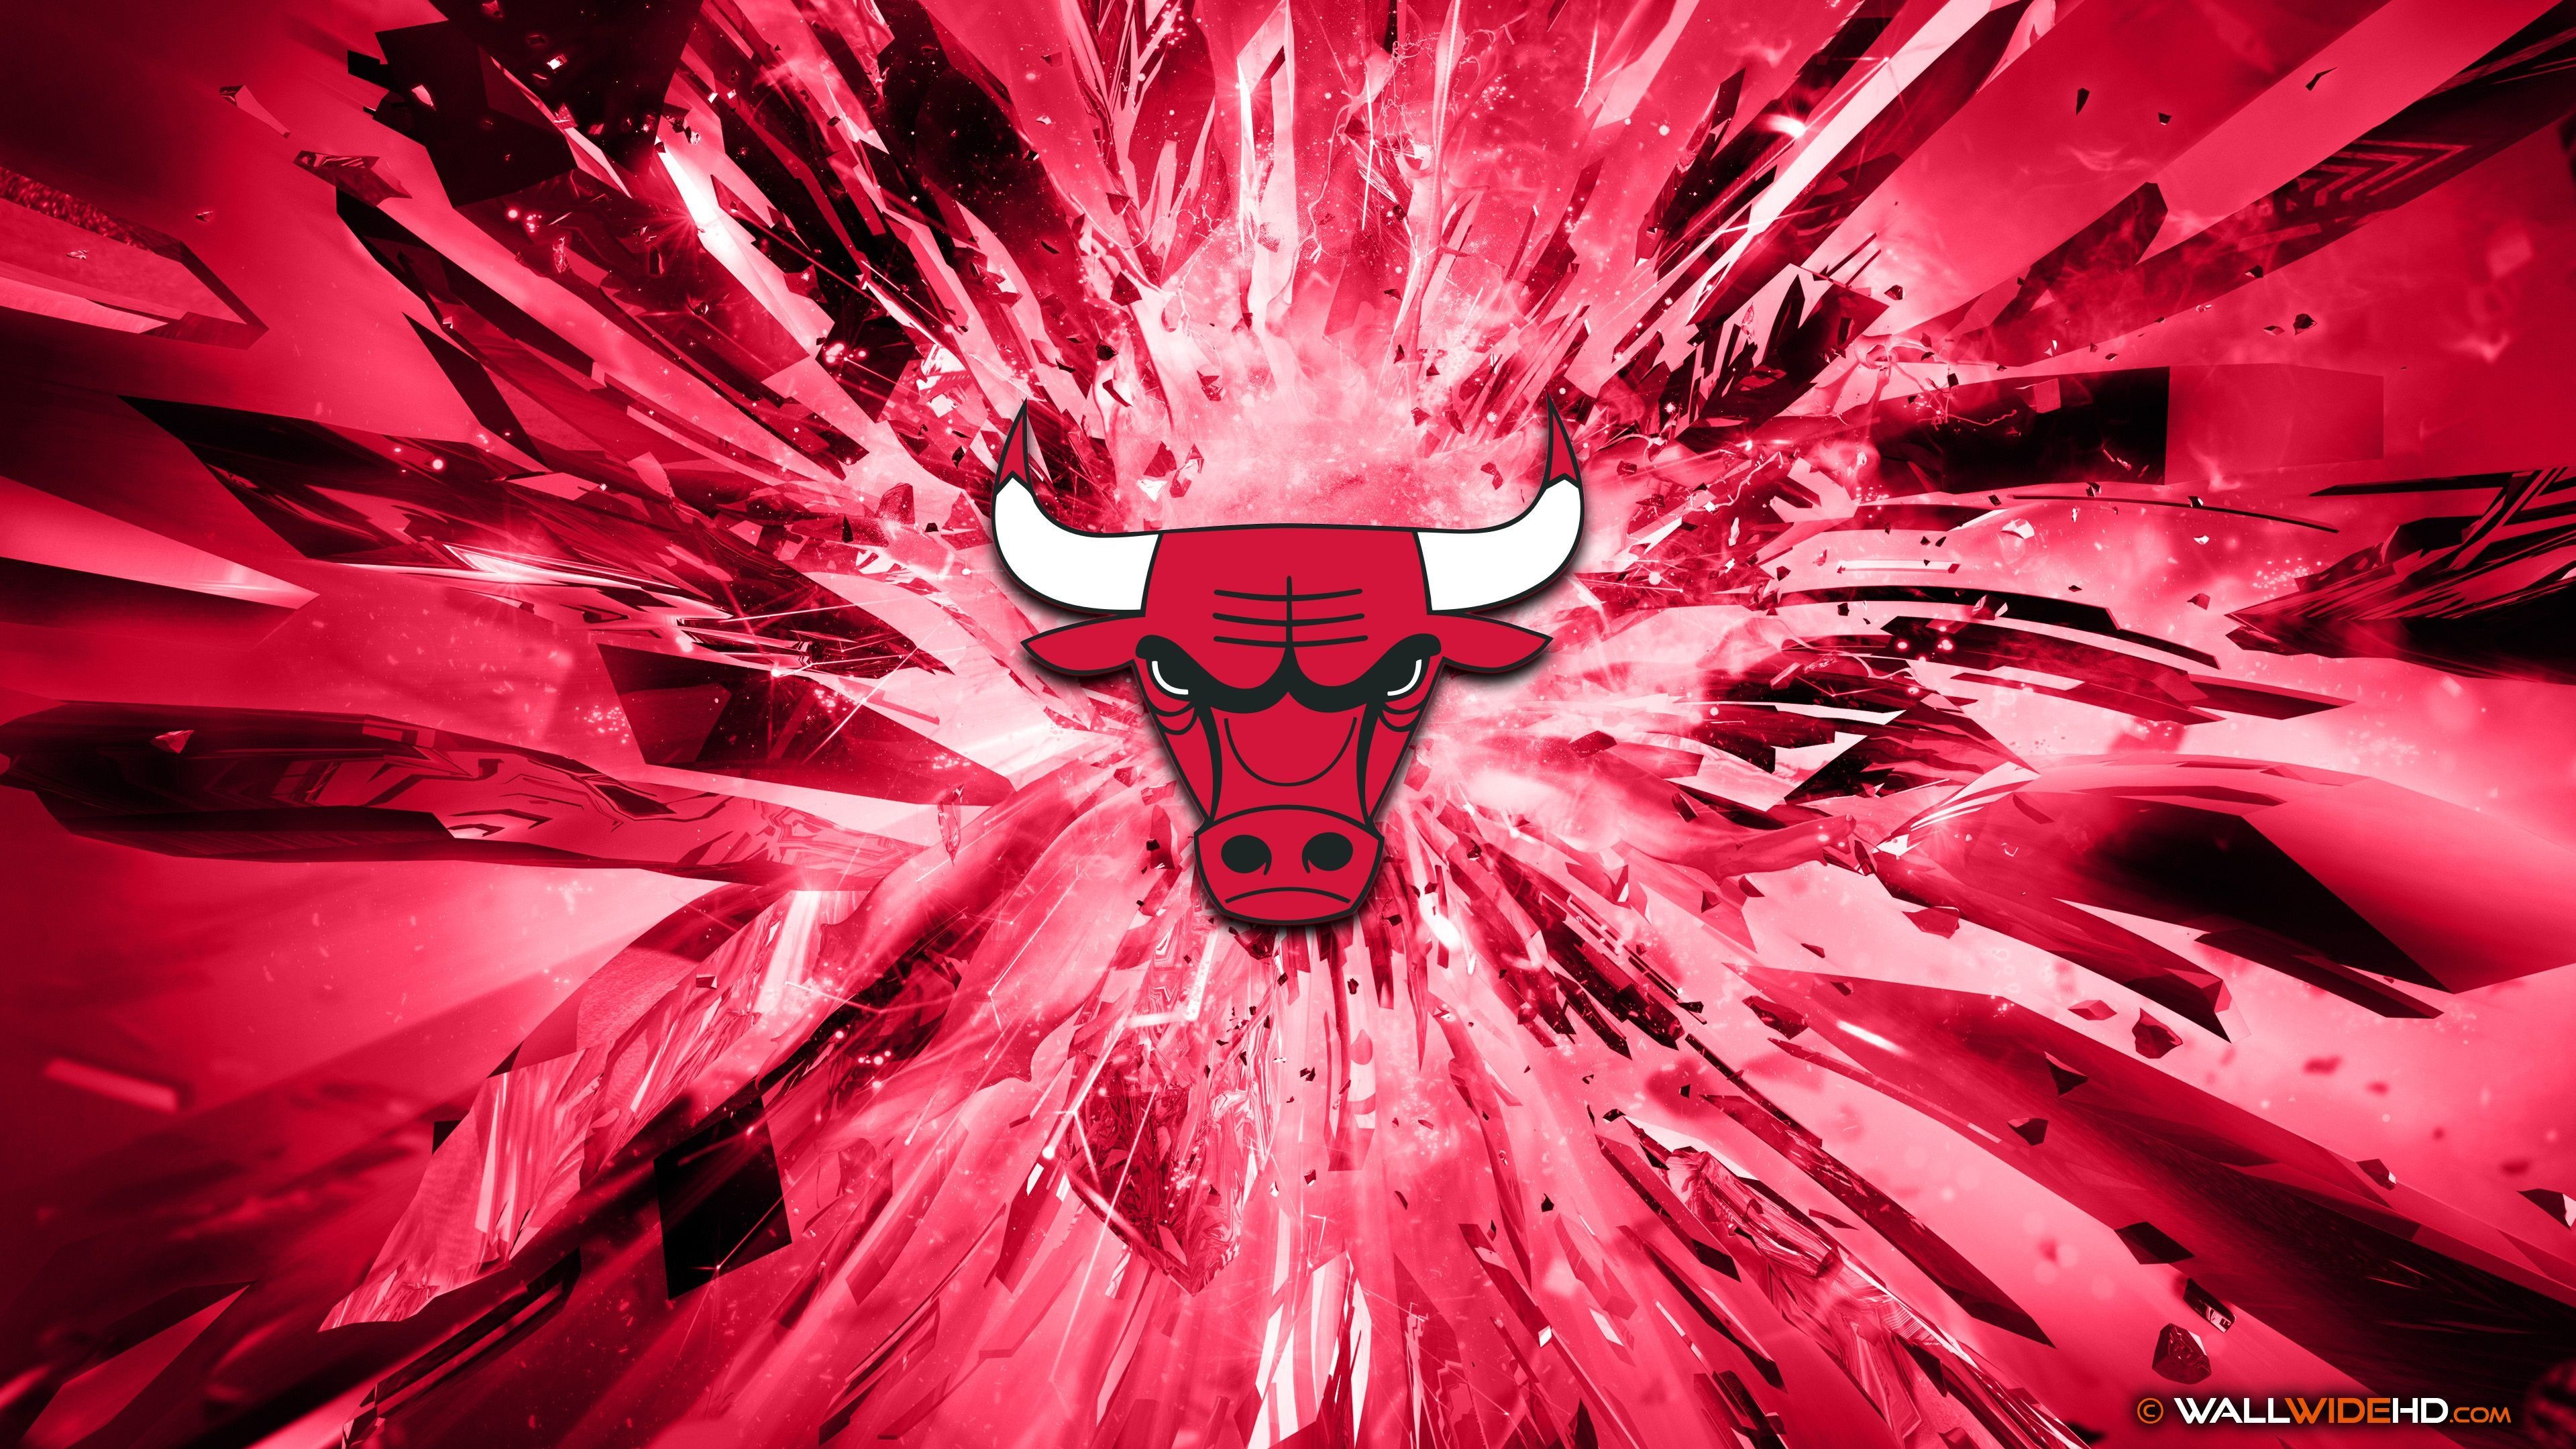 3840x2160 Chicago Bulls 2015 Logo 4K Wallpaper